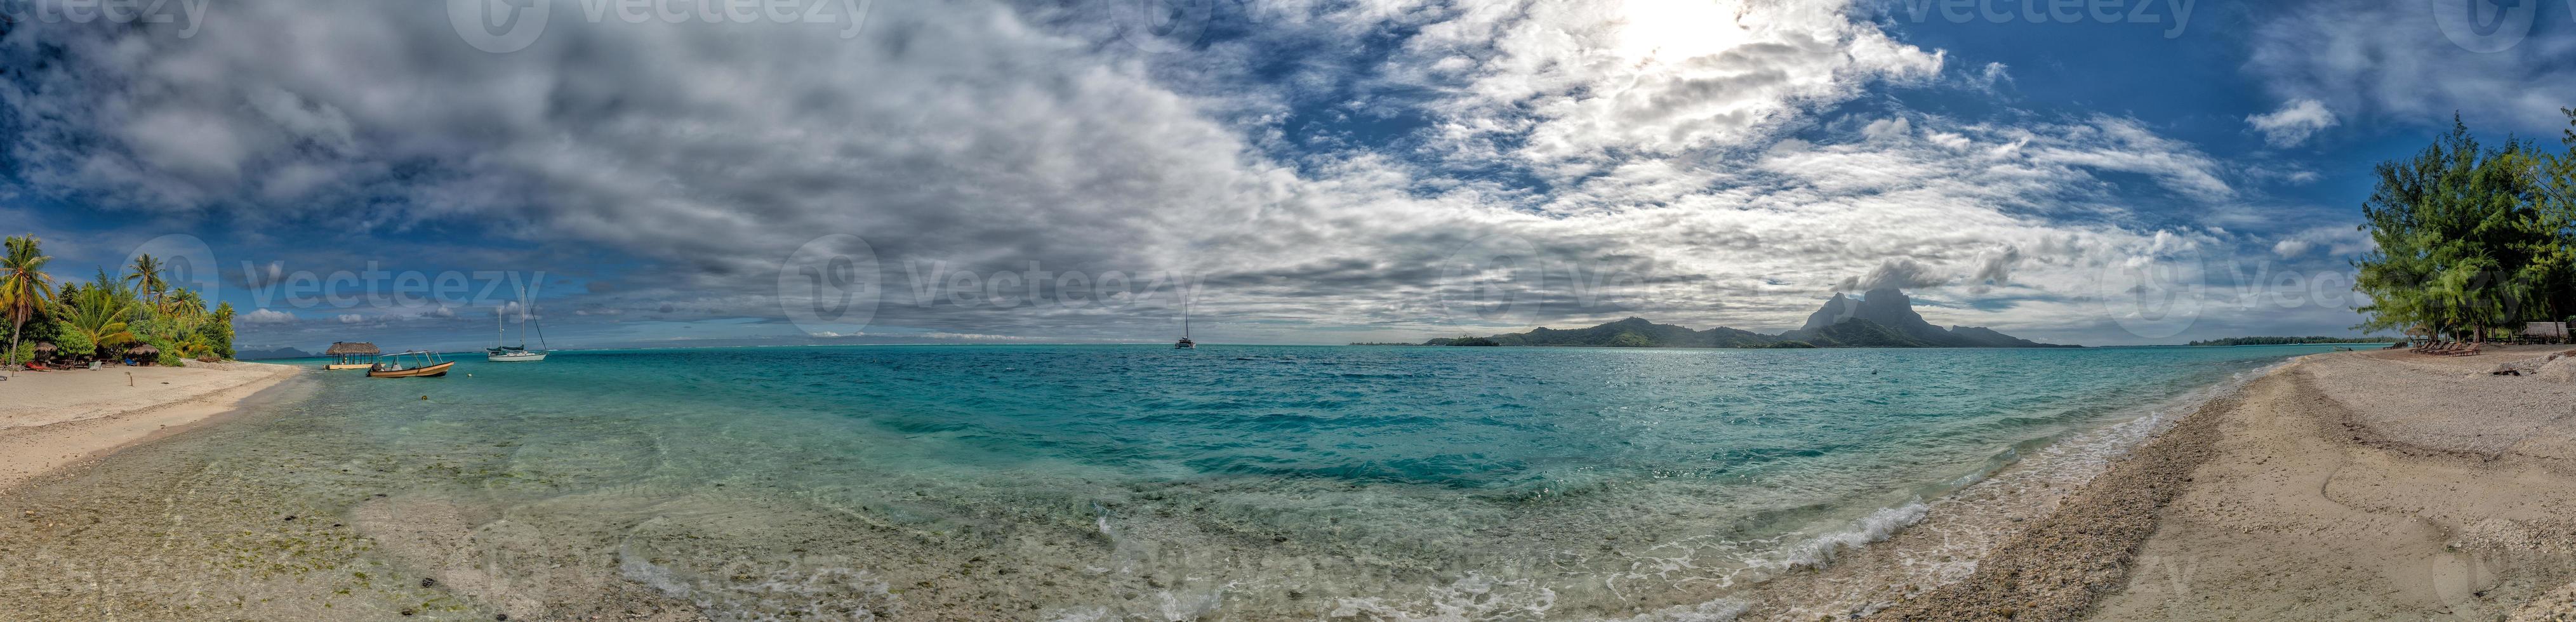 bora bora franska polynesien blå lagun turkos kristall vatten foto